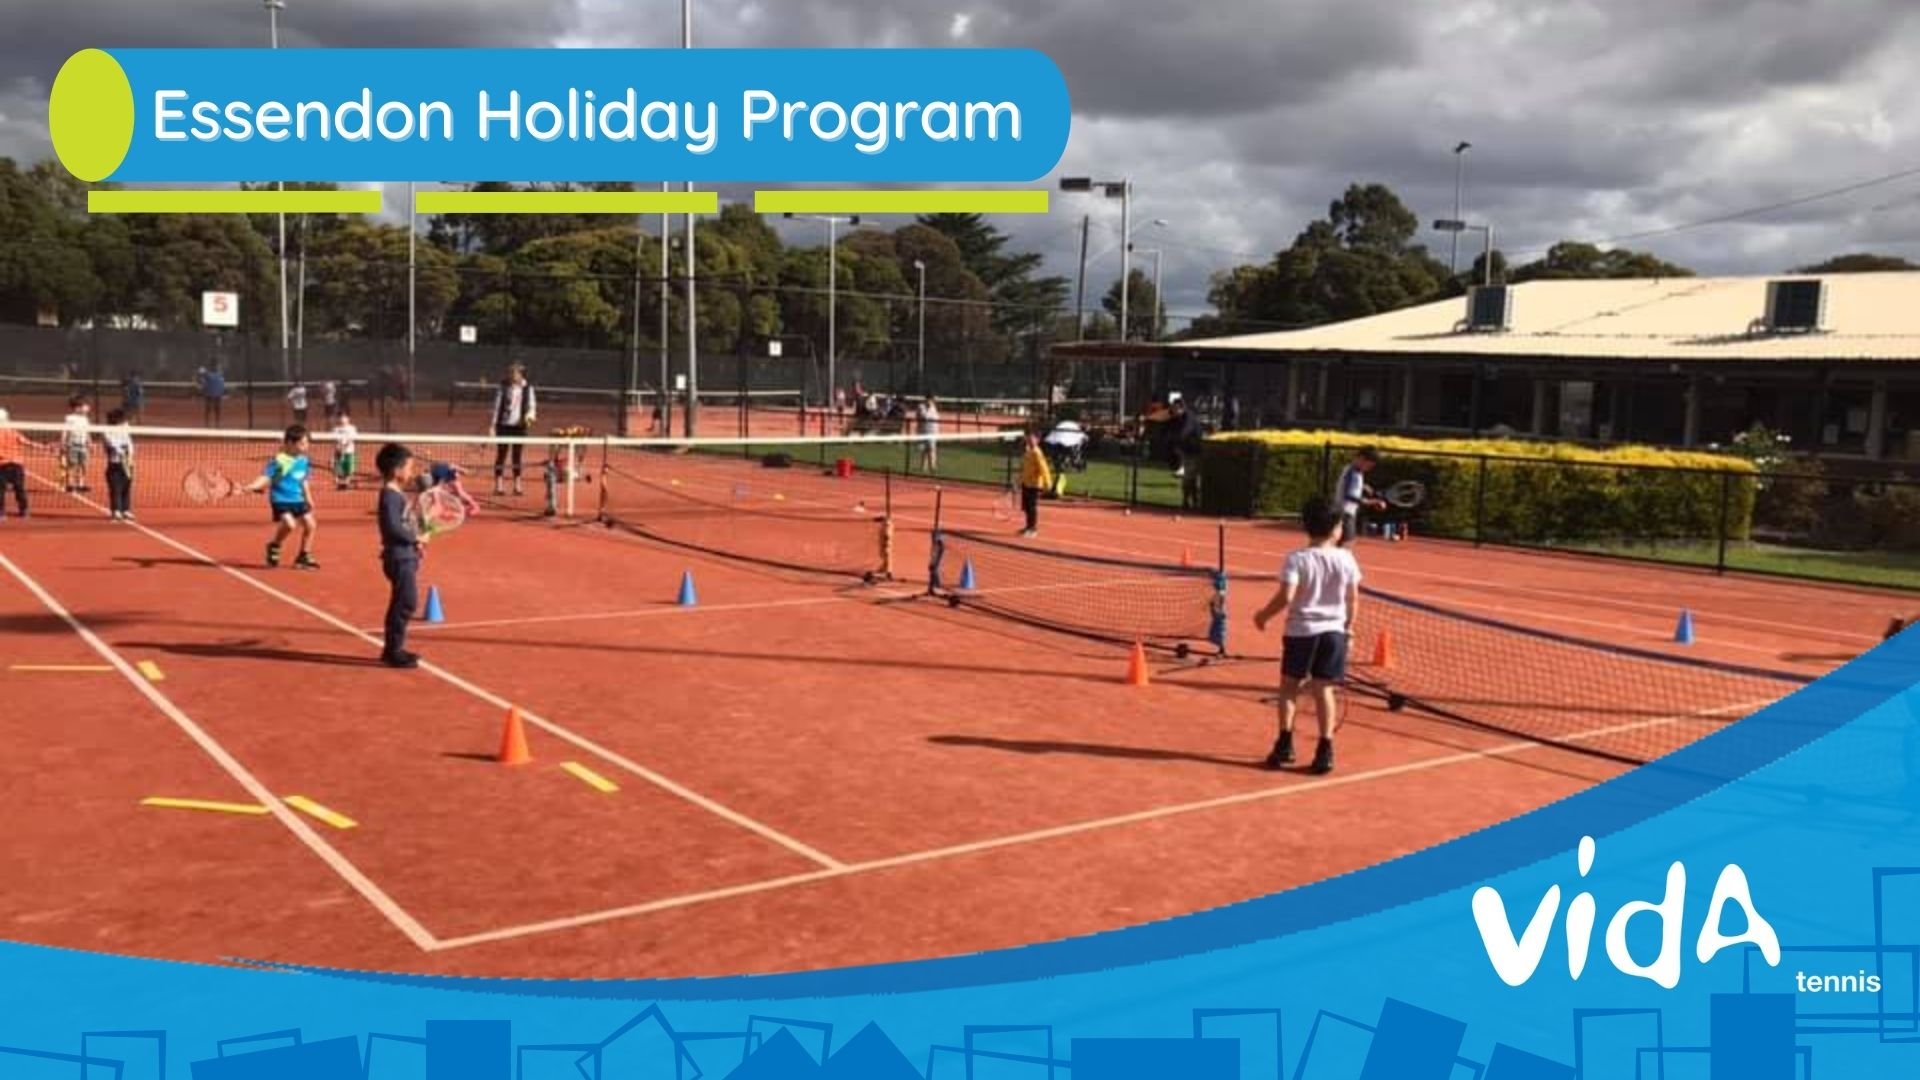 Holiday Program @ Essendon Tennis Club